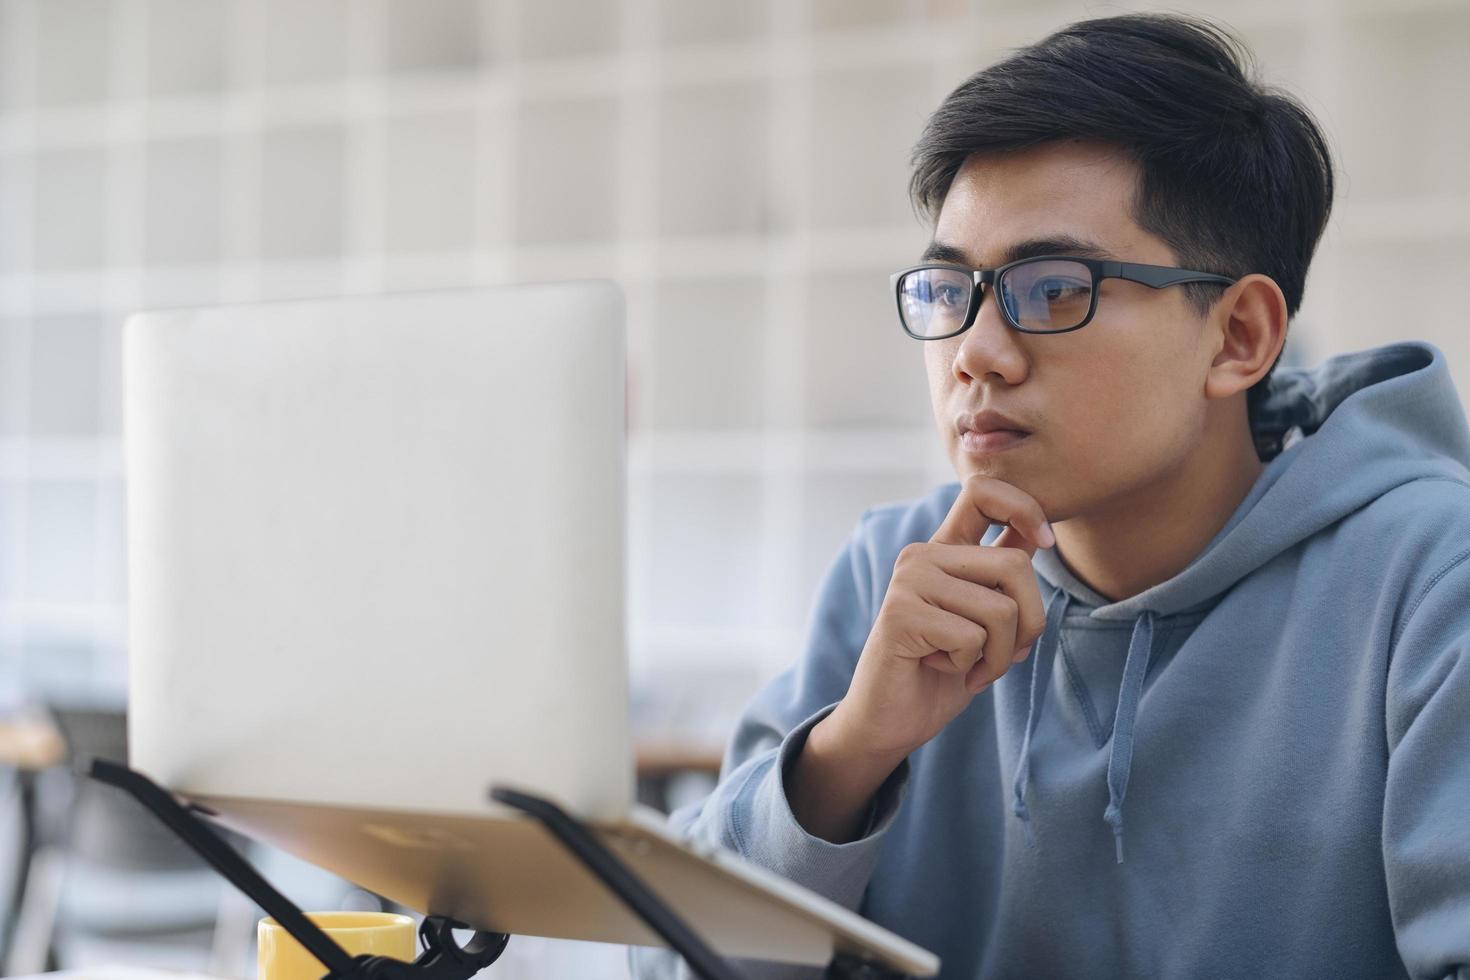 jeune étudiant en collage utilisant un ordinateur pour étudier en ligne photo